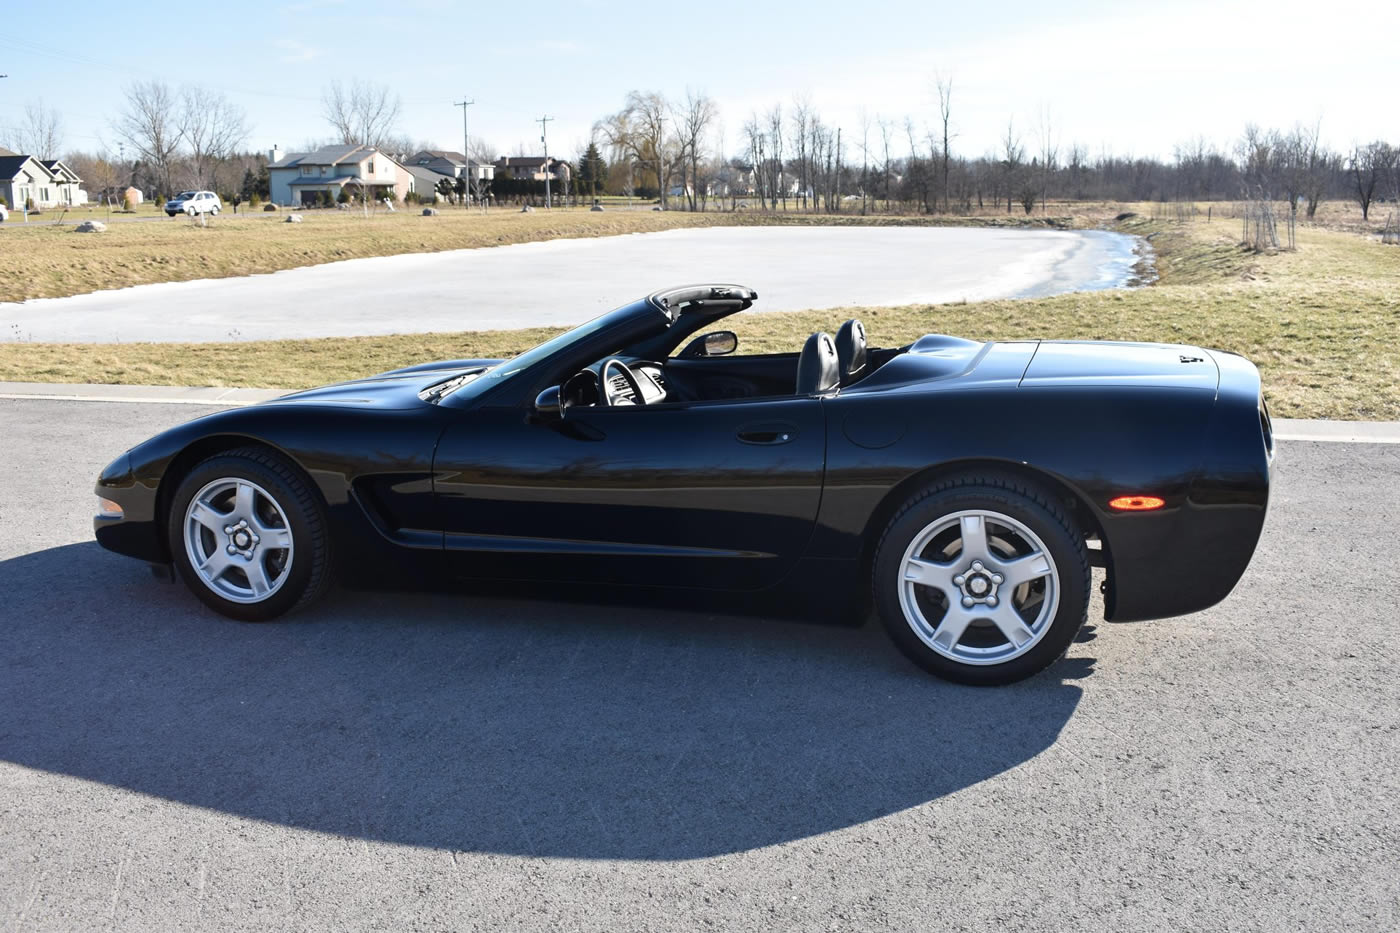 1999 Corvette Convertible in Black